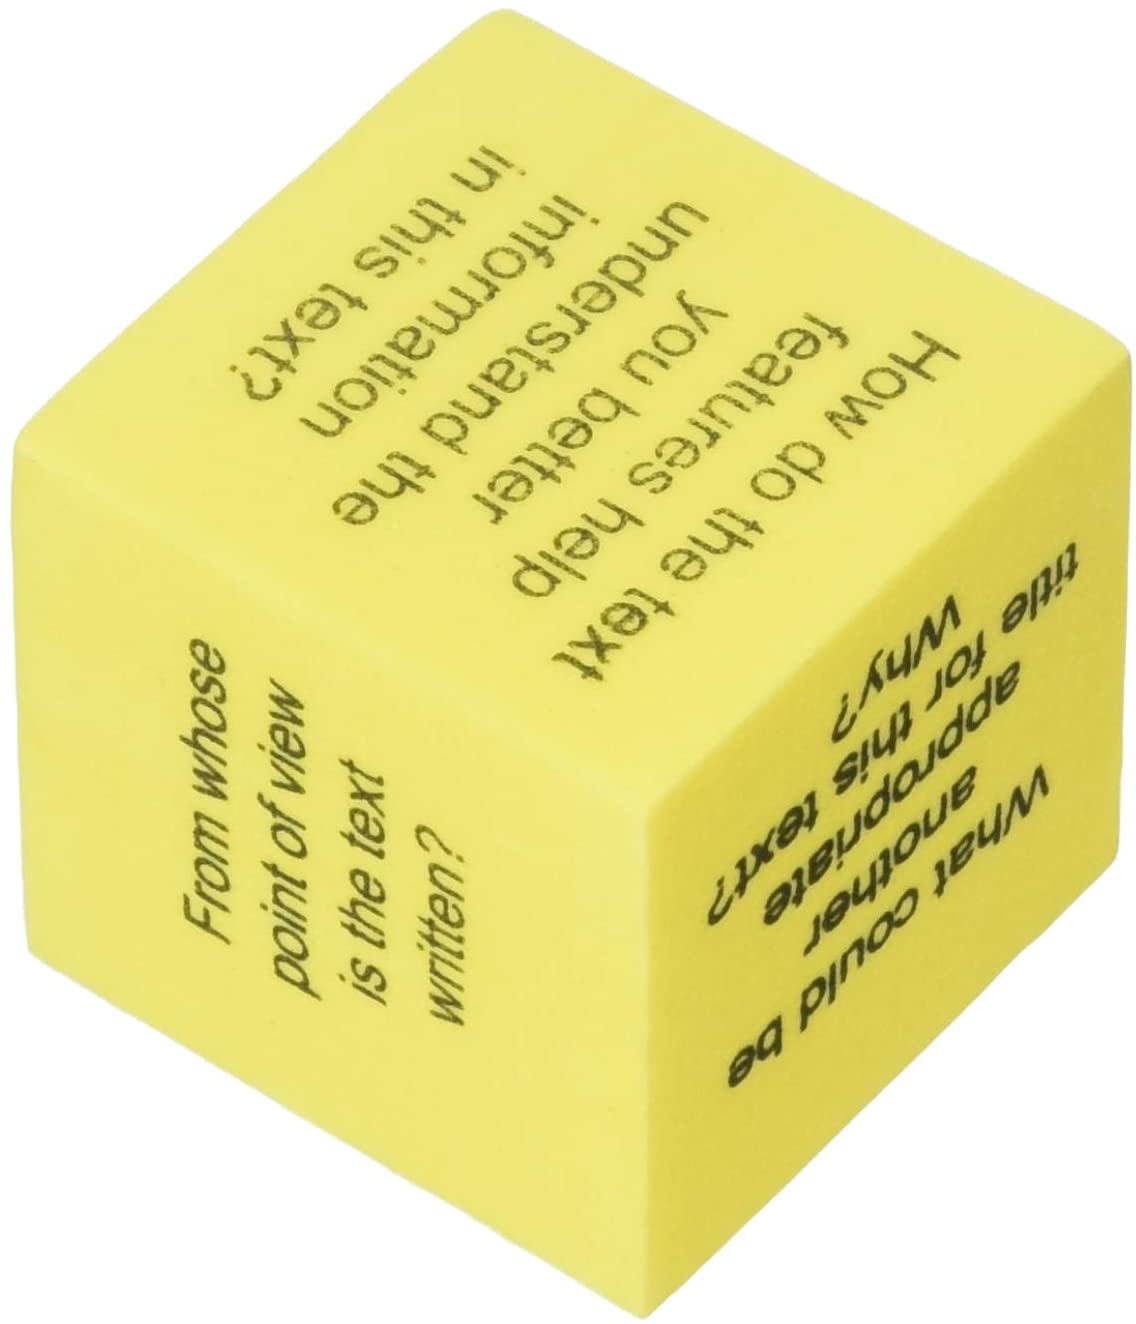 TCR20703 Teacher Created Resources Foam Nonfiction Comprehension Cubes 